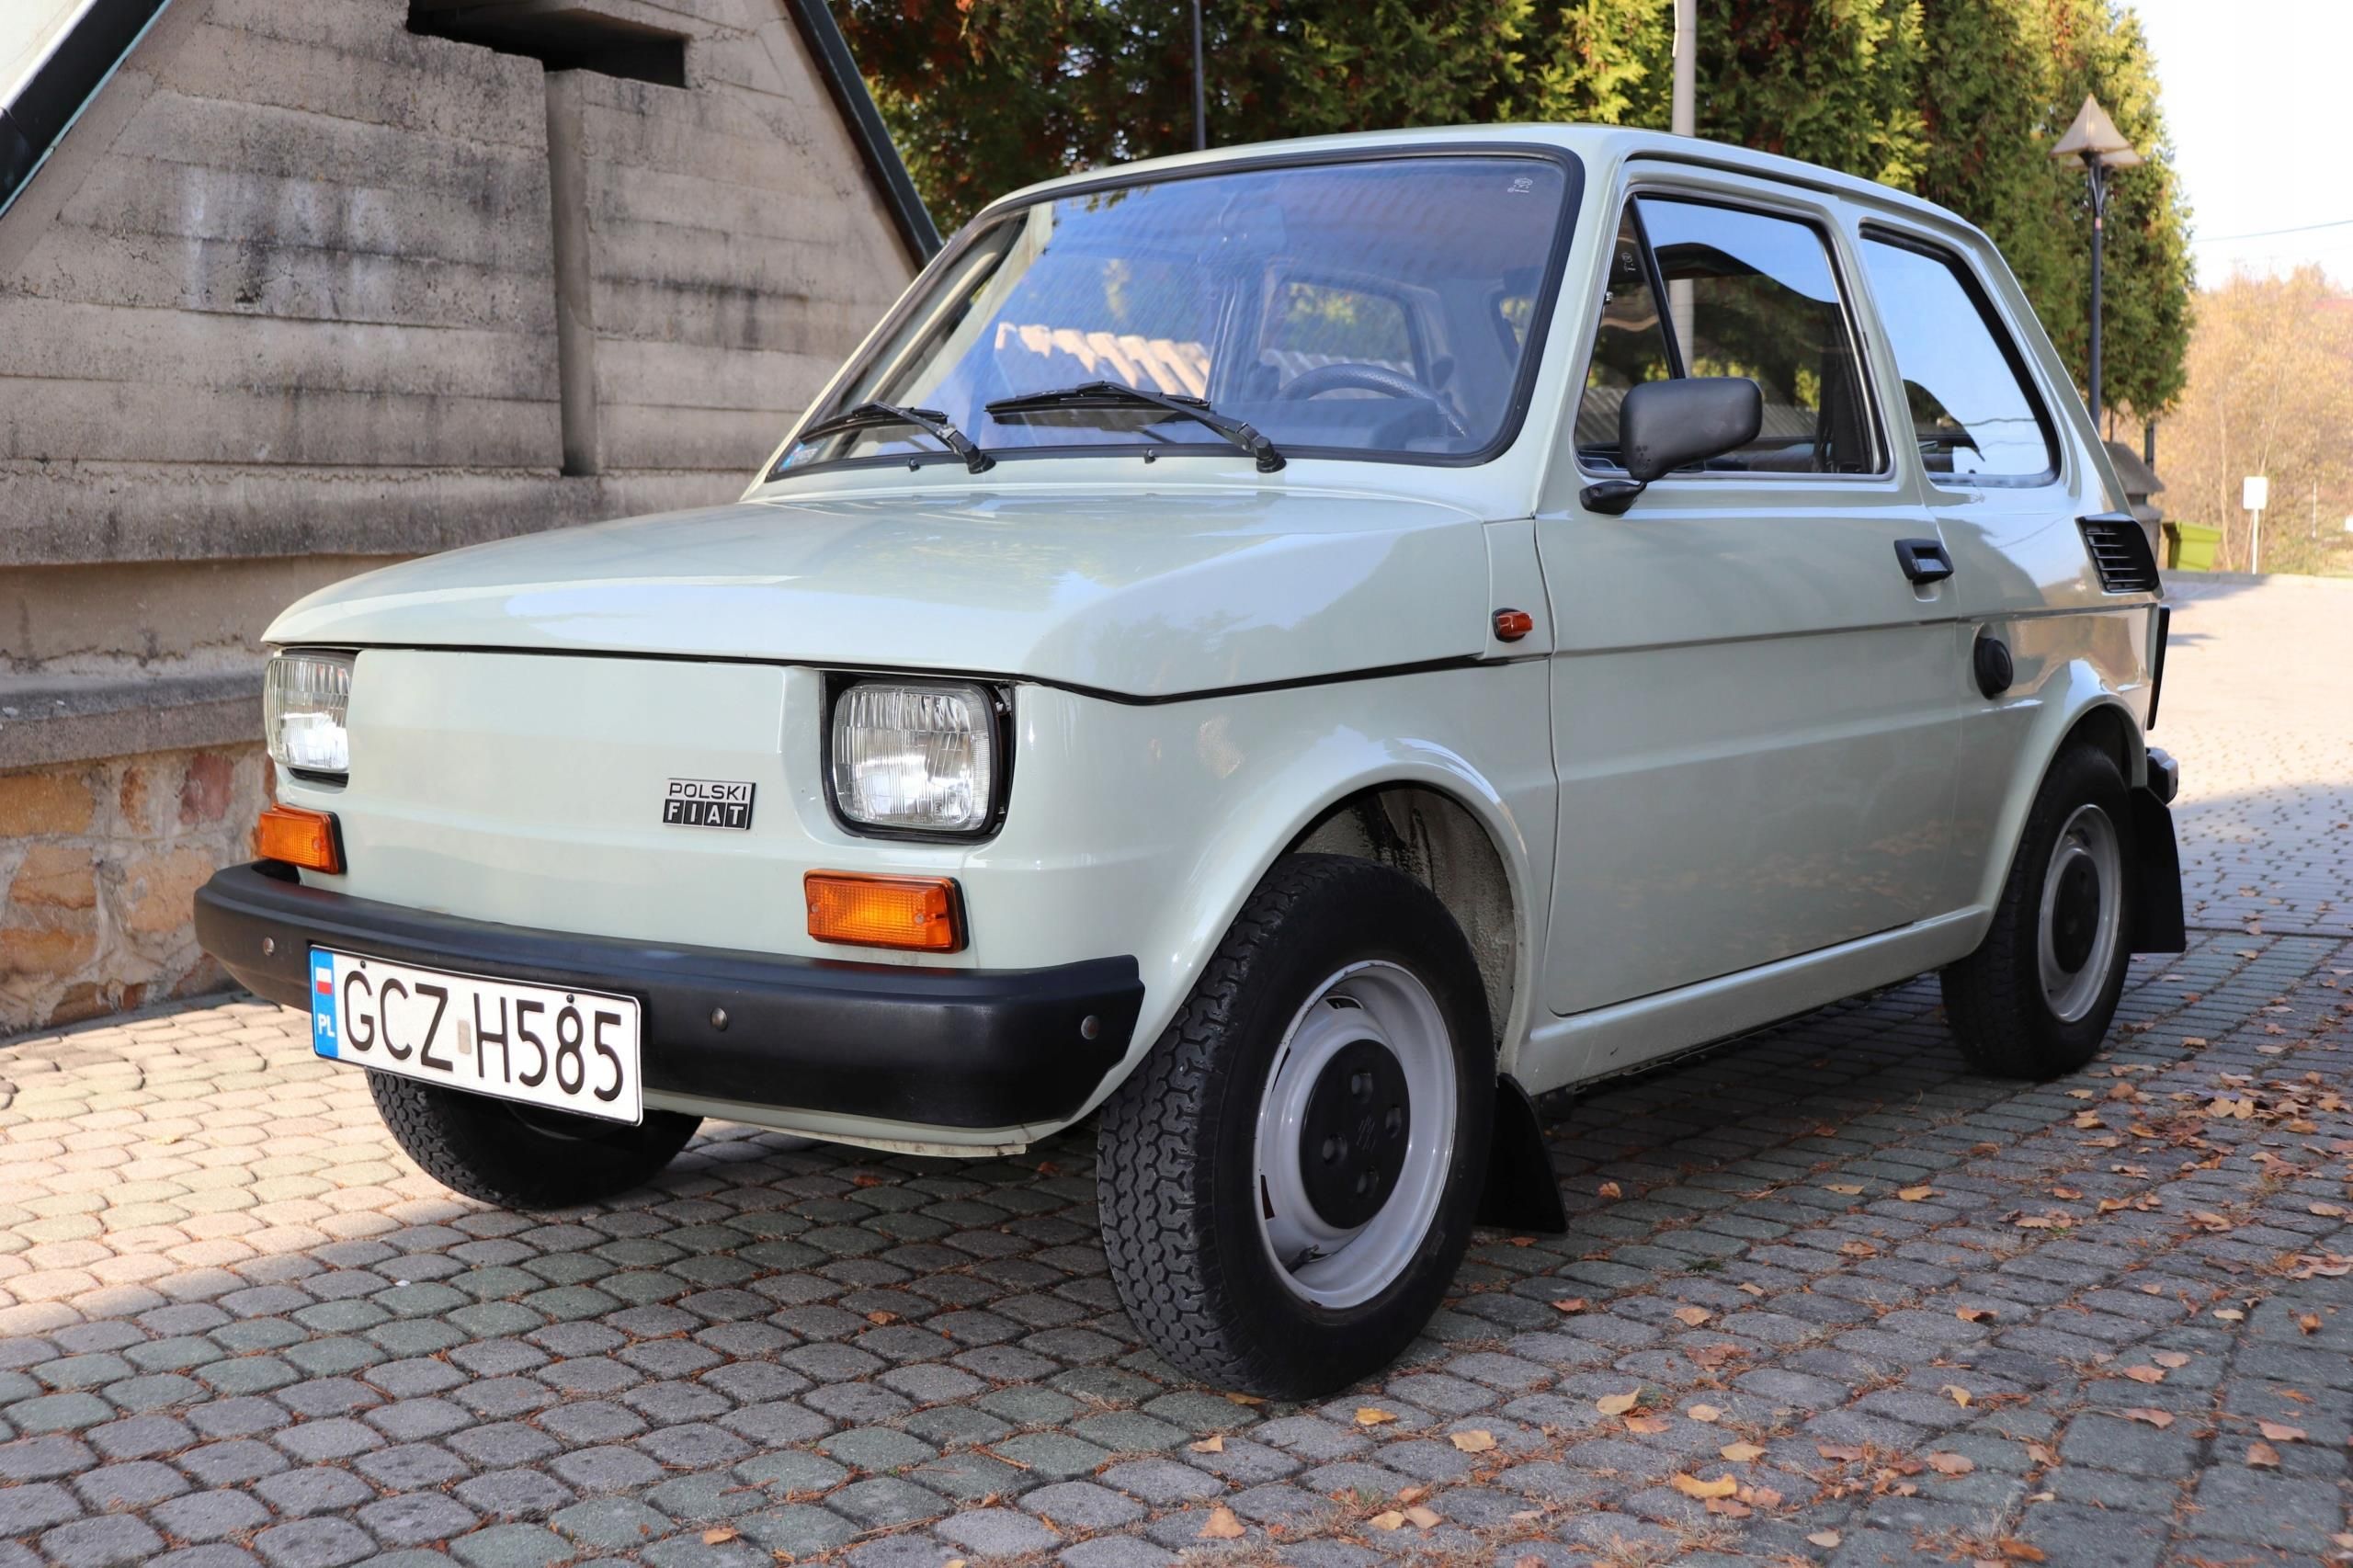 Fiat 126P Przebieg: 7 Tys. Km. Oryginalne Opony. - Opinie I Ceny Na Ceneo.pl